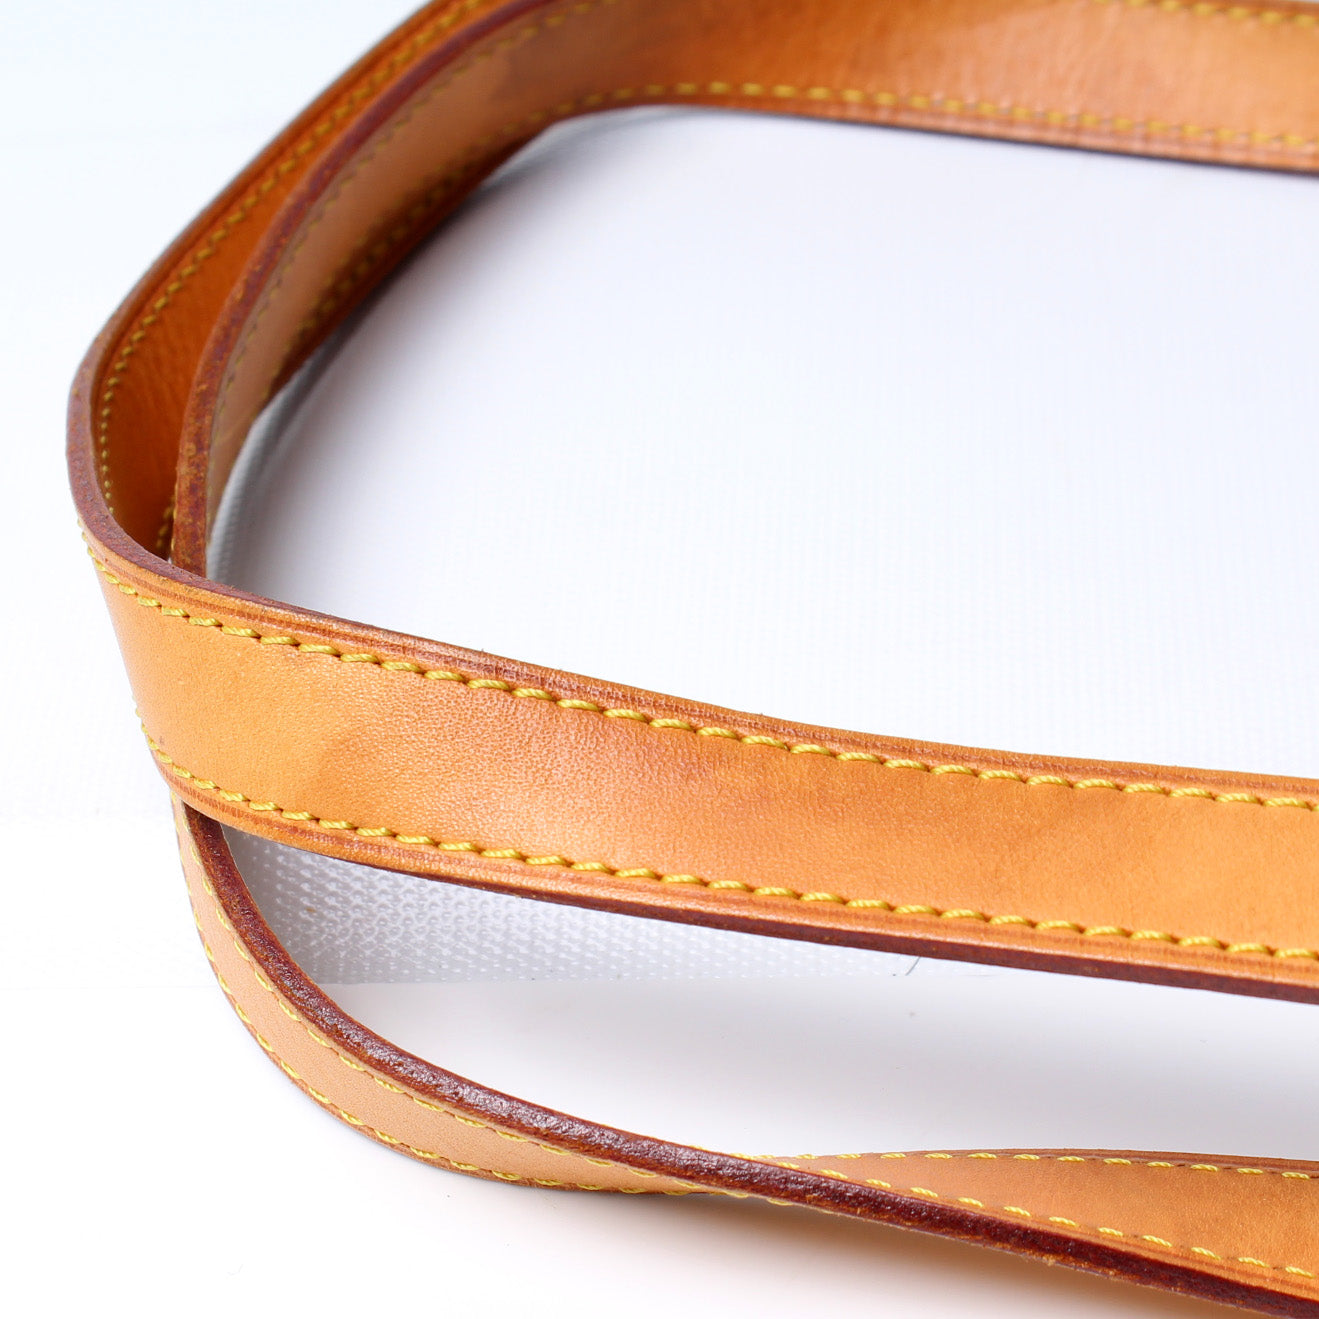 Batignolles Horizontal Monogram – Keeks Designer Handbags